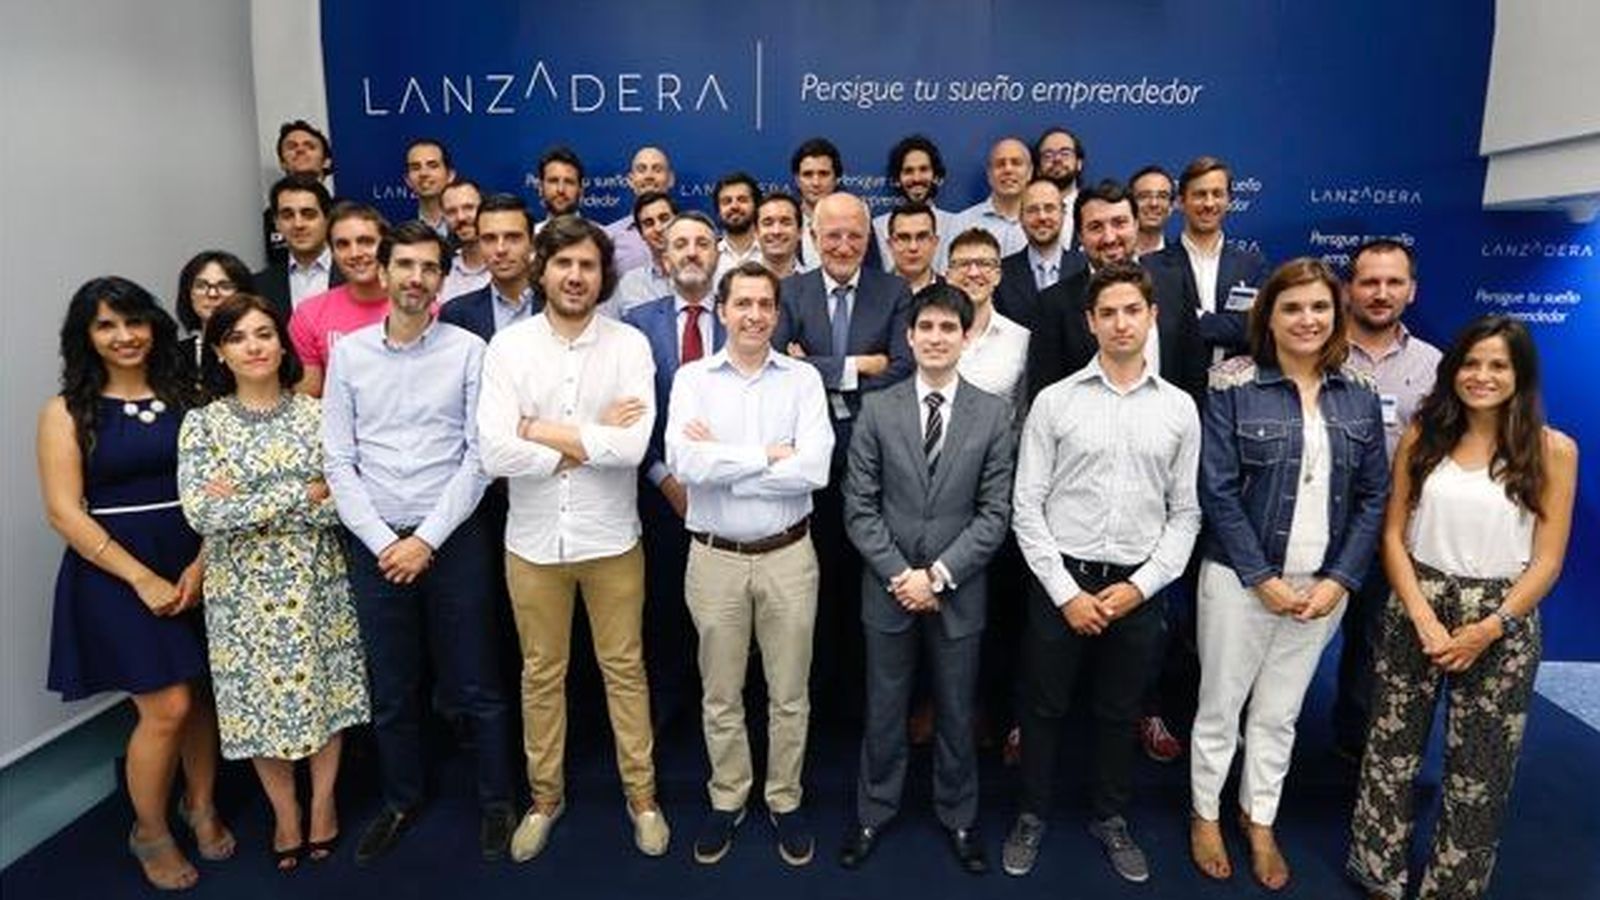 Foto: Representantes de los proyectos apoyados por la plataforma Lanzadera. (Lanzadera)